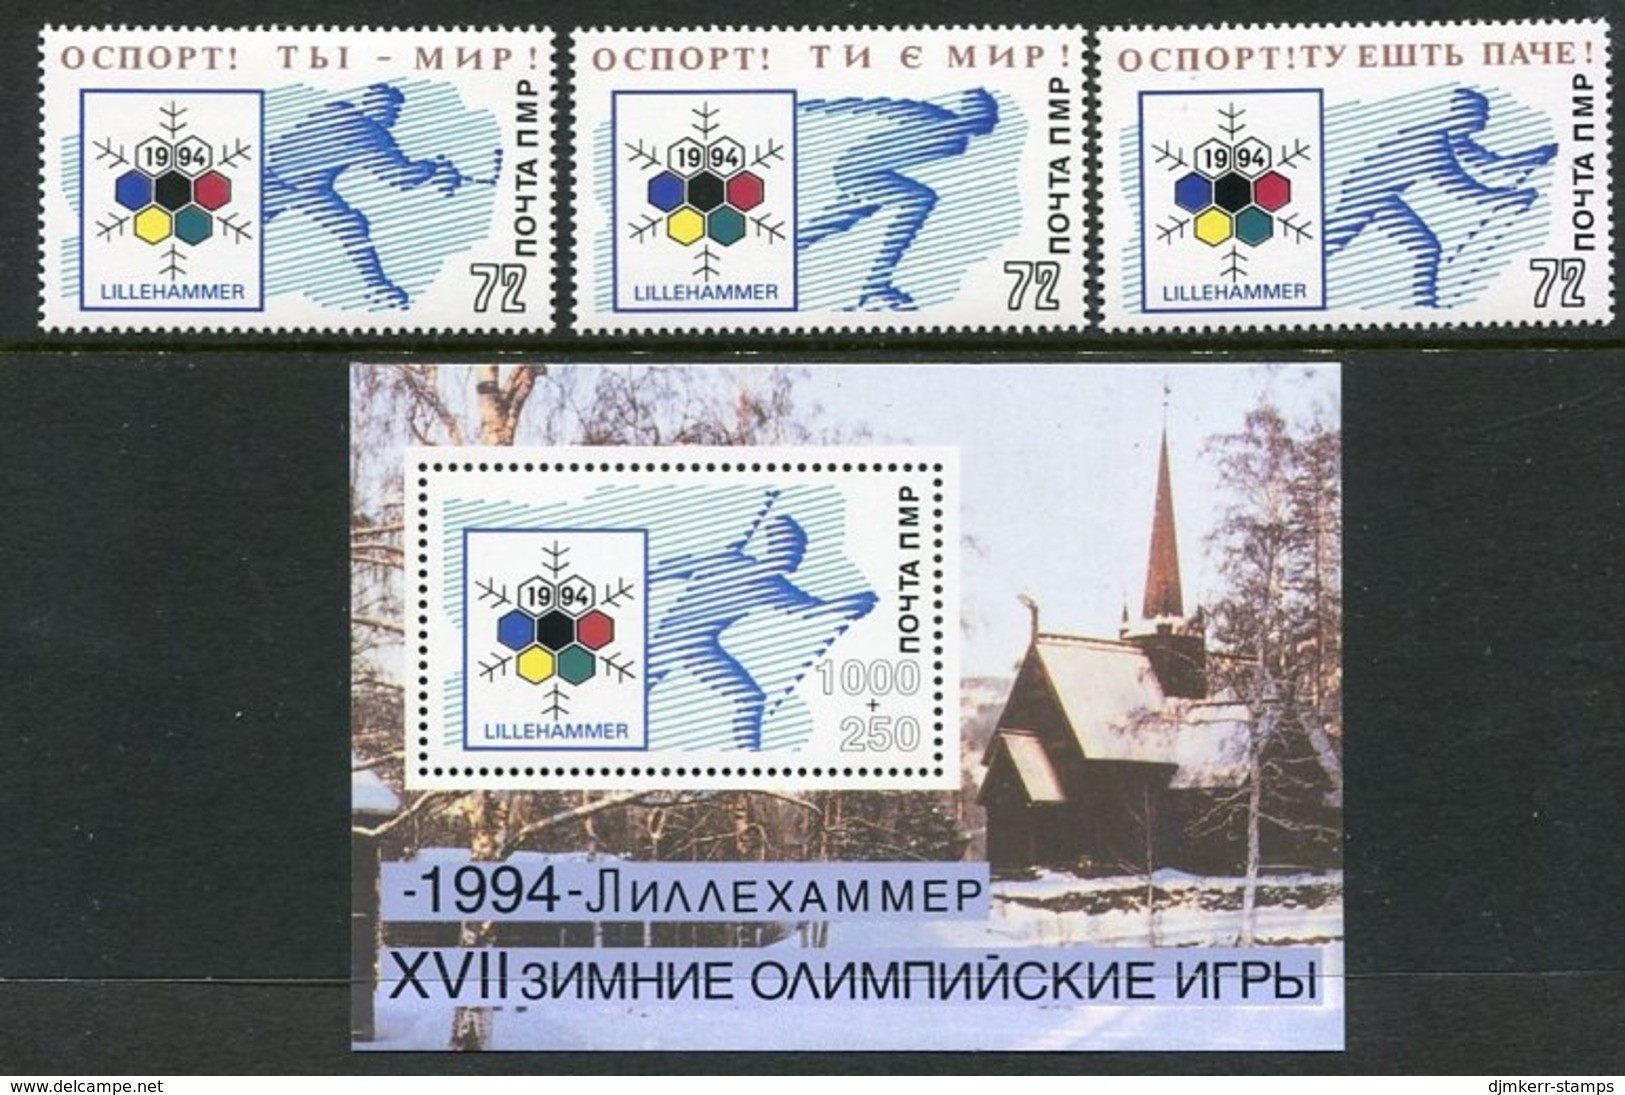 MOLDOVA PMR 1994 Winter Olympics Lillehammer  MNH / **. - Moldawien (Moldau)